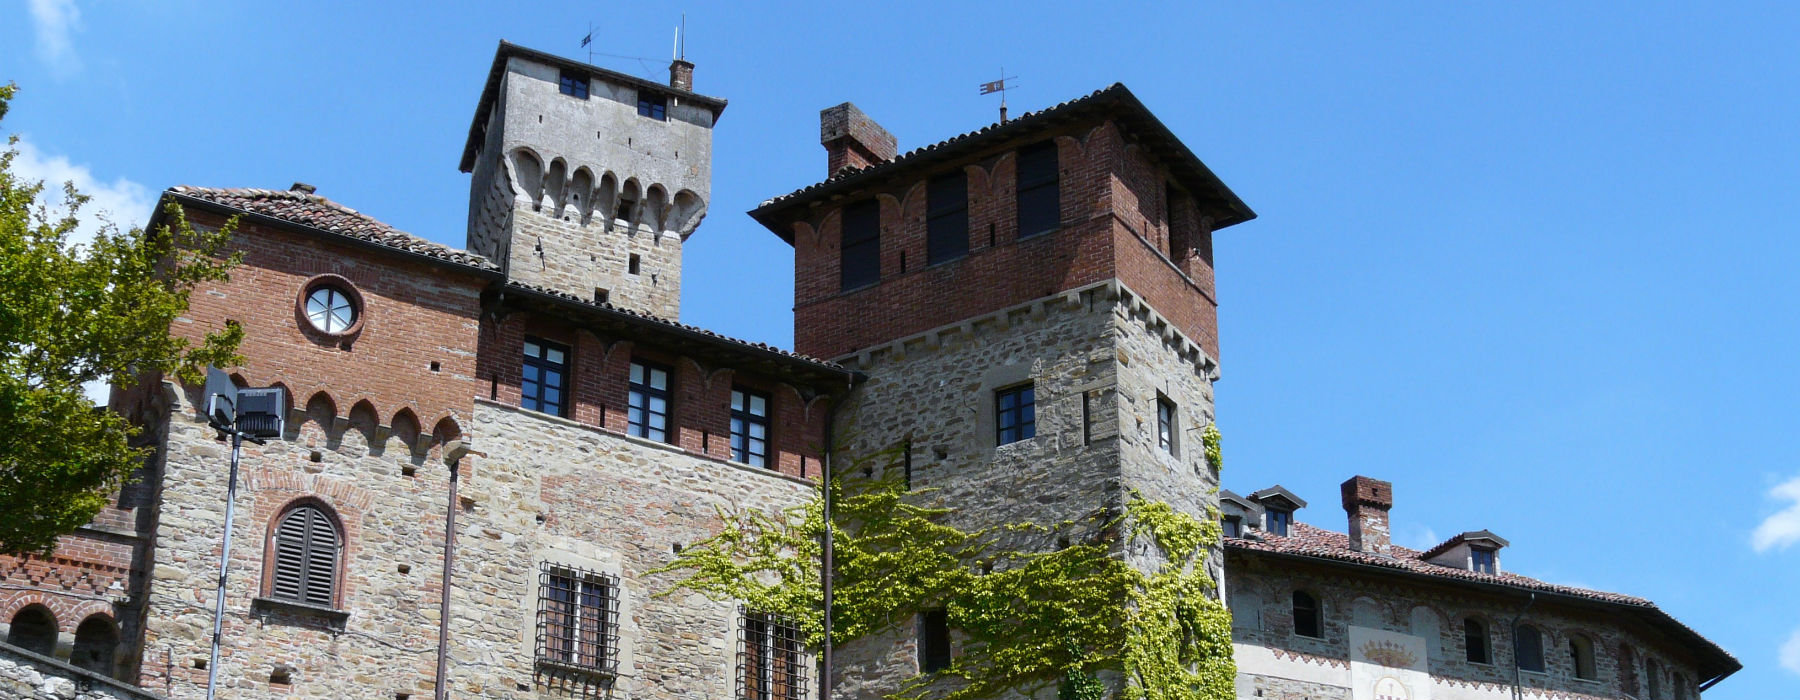 Castello di Tagliolo